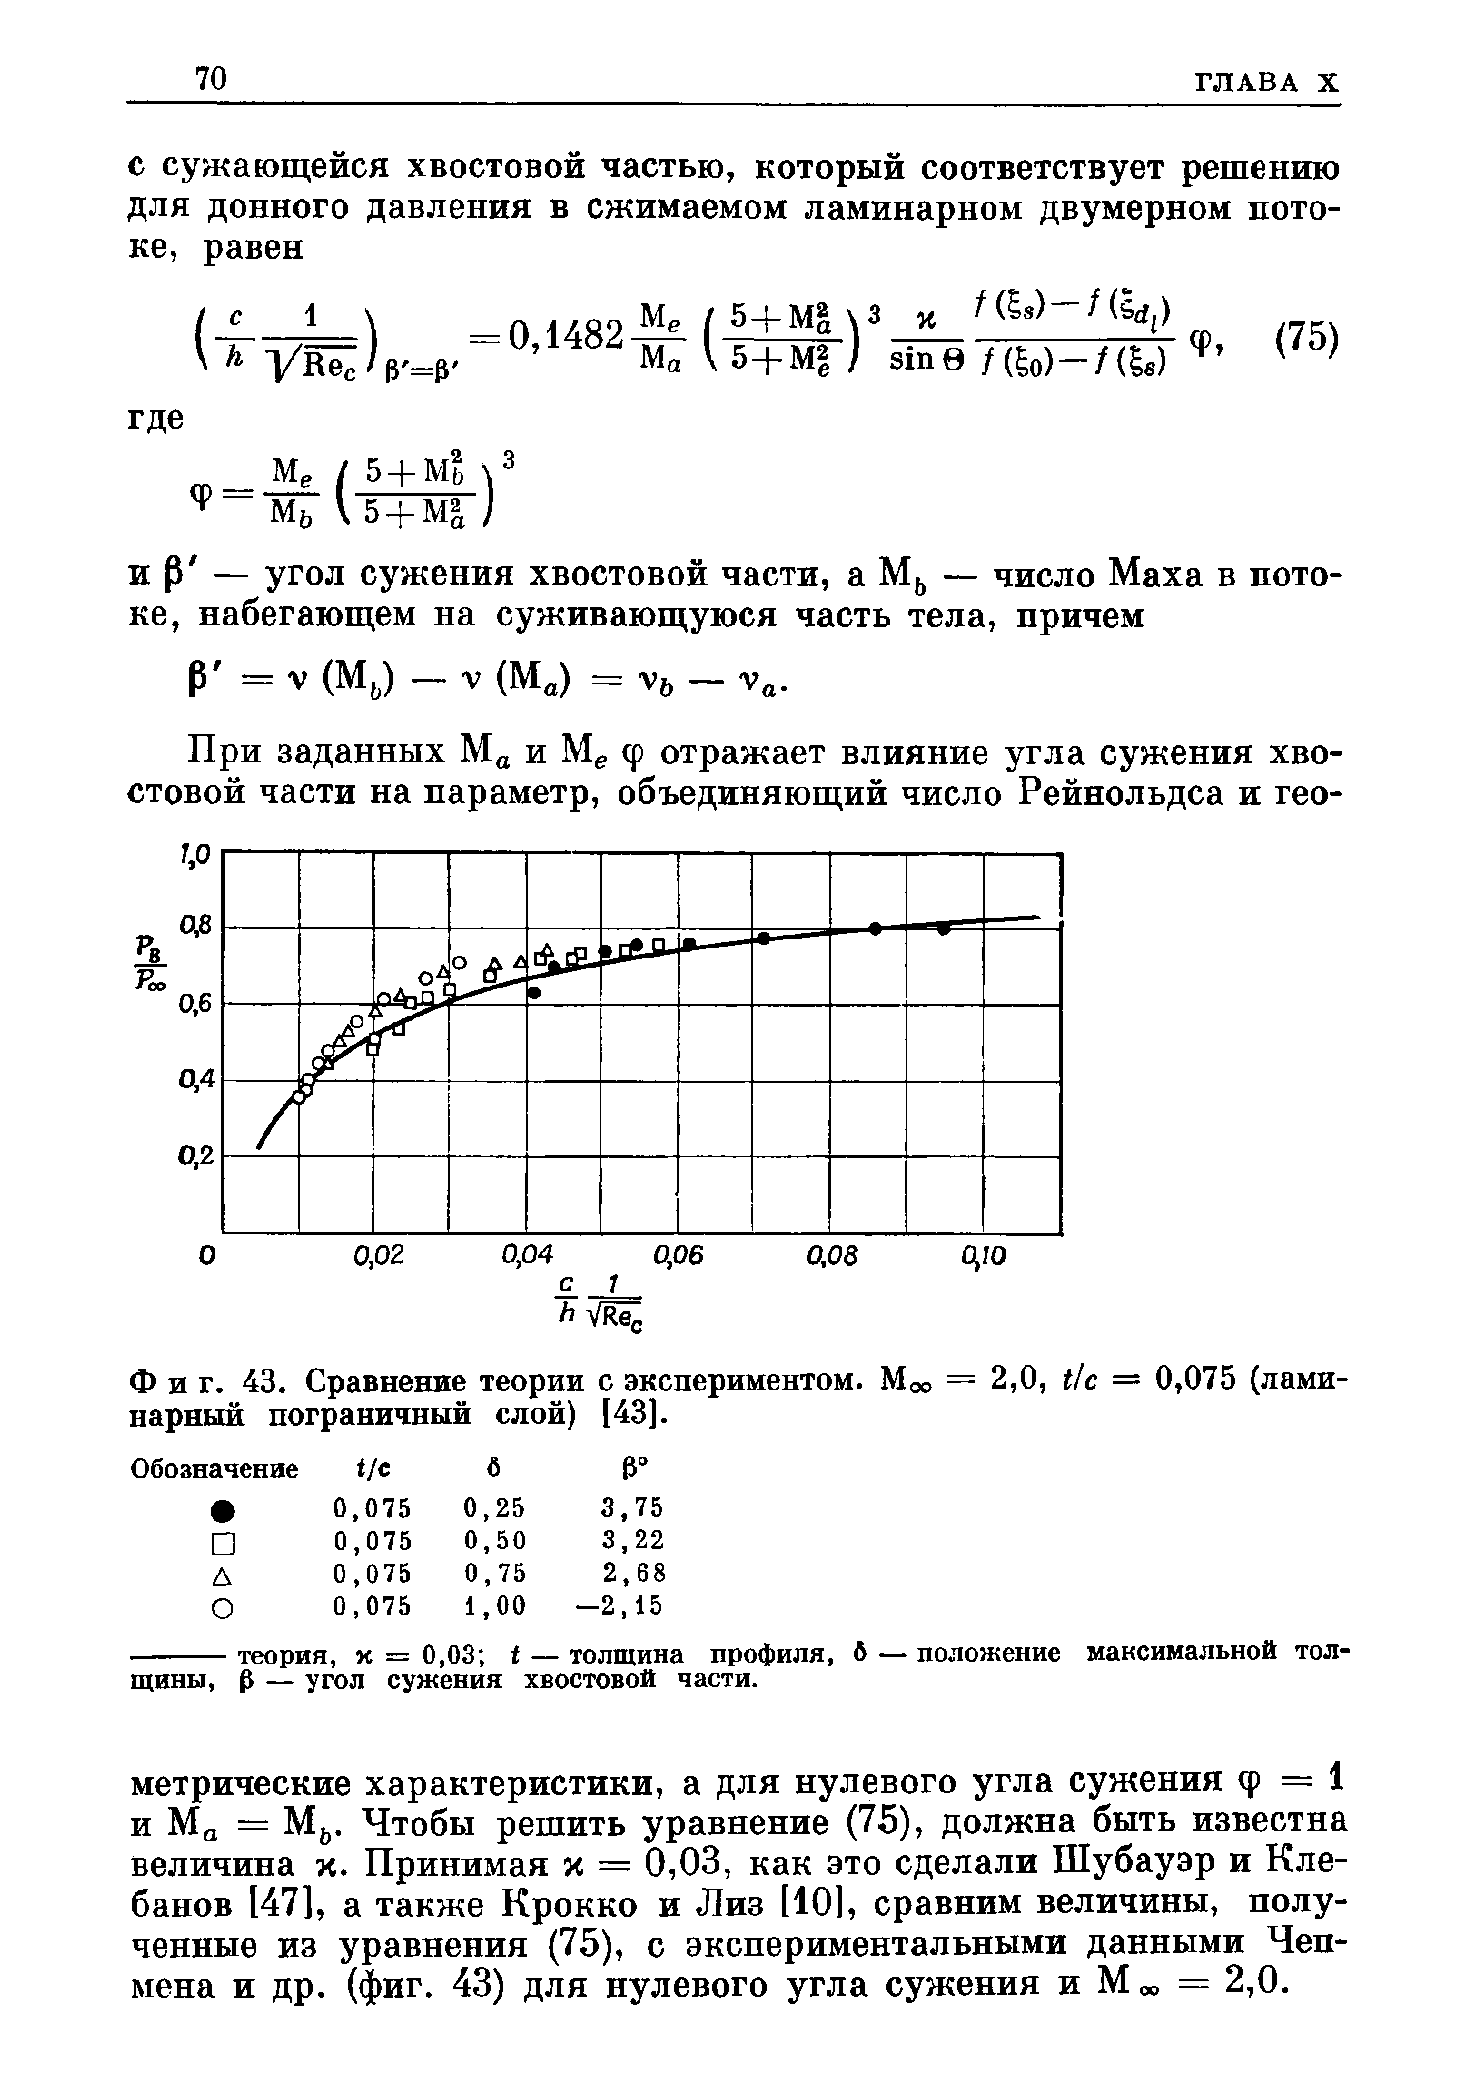 Фиг. 43. Сравнение теории с экспериментом. Моо = 2,0, ti — 0,075 (ламинарный пограничный слой) [43].
